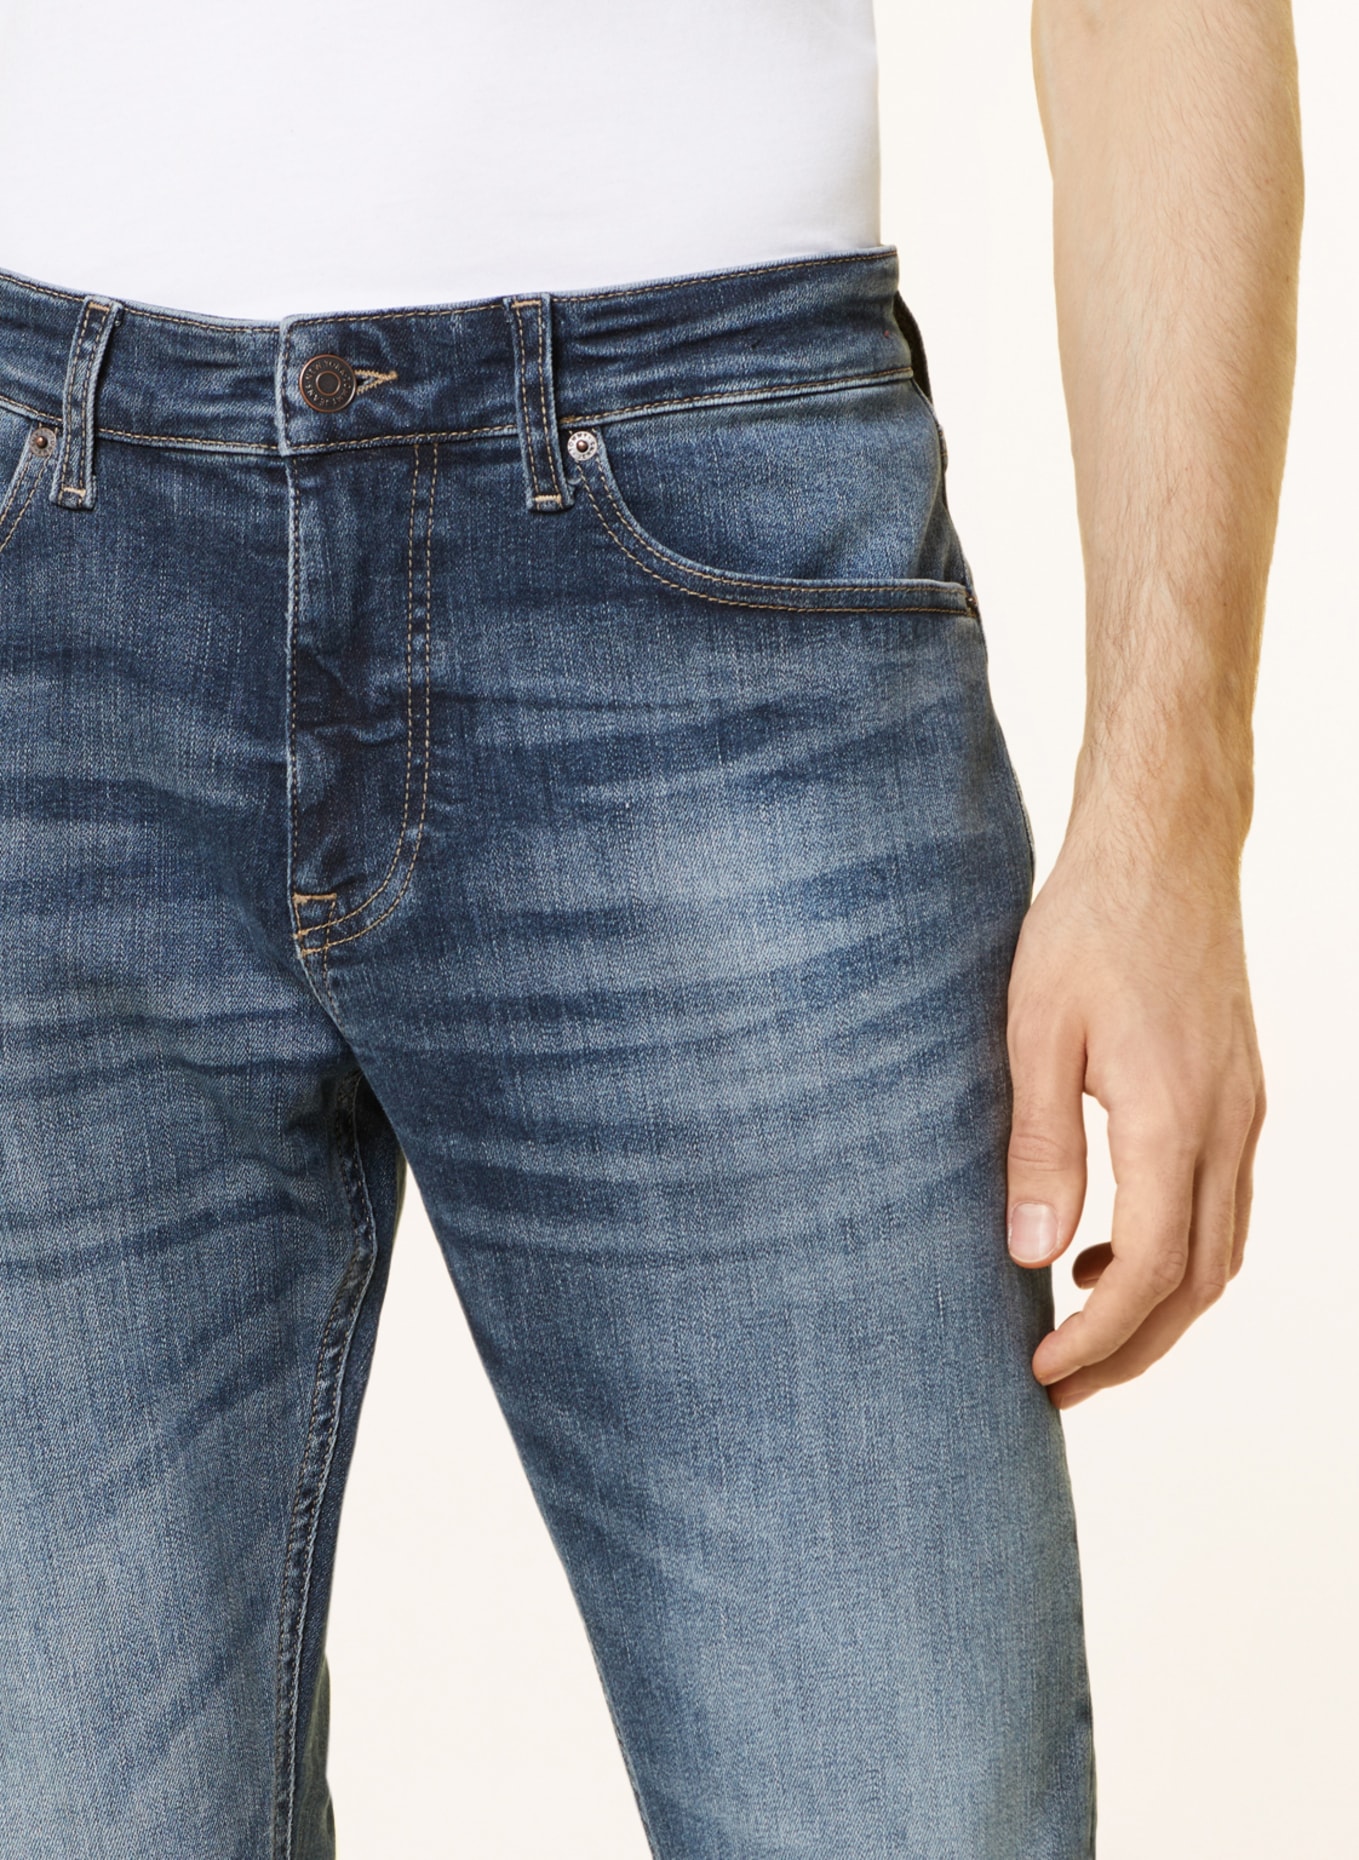 TOMMY JEANS Jeans AUSTIN tapered fit, Color: 1BK Denim Dark (Image 5)